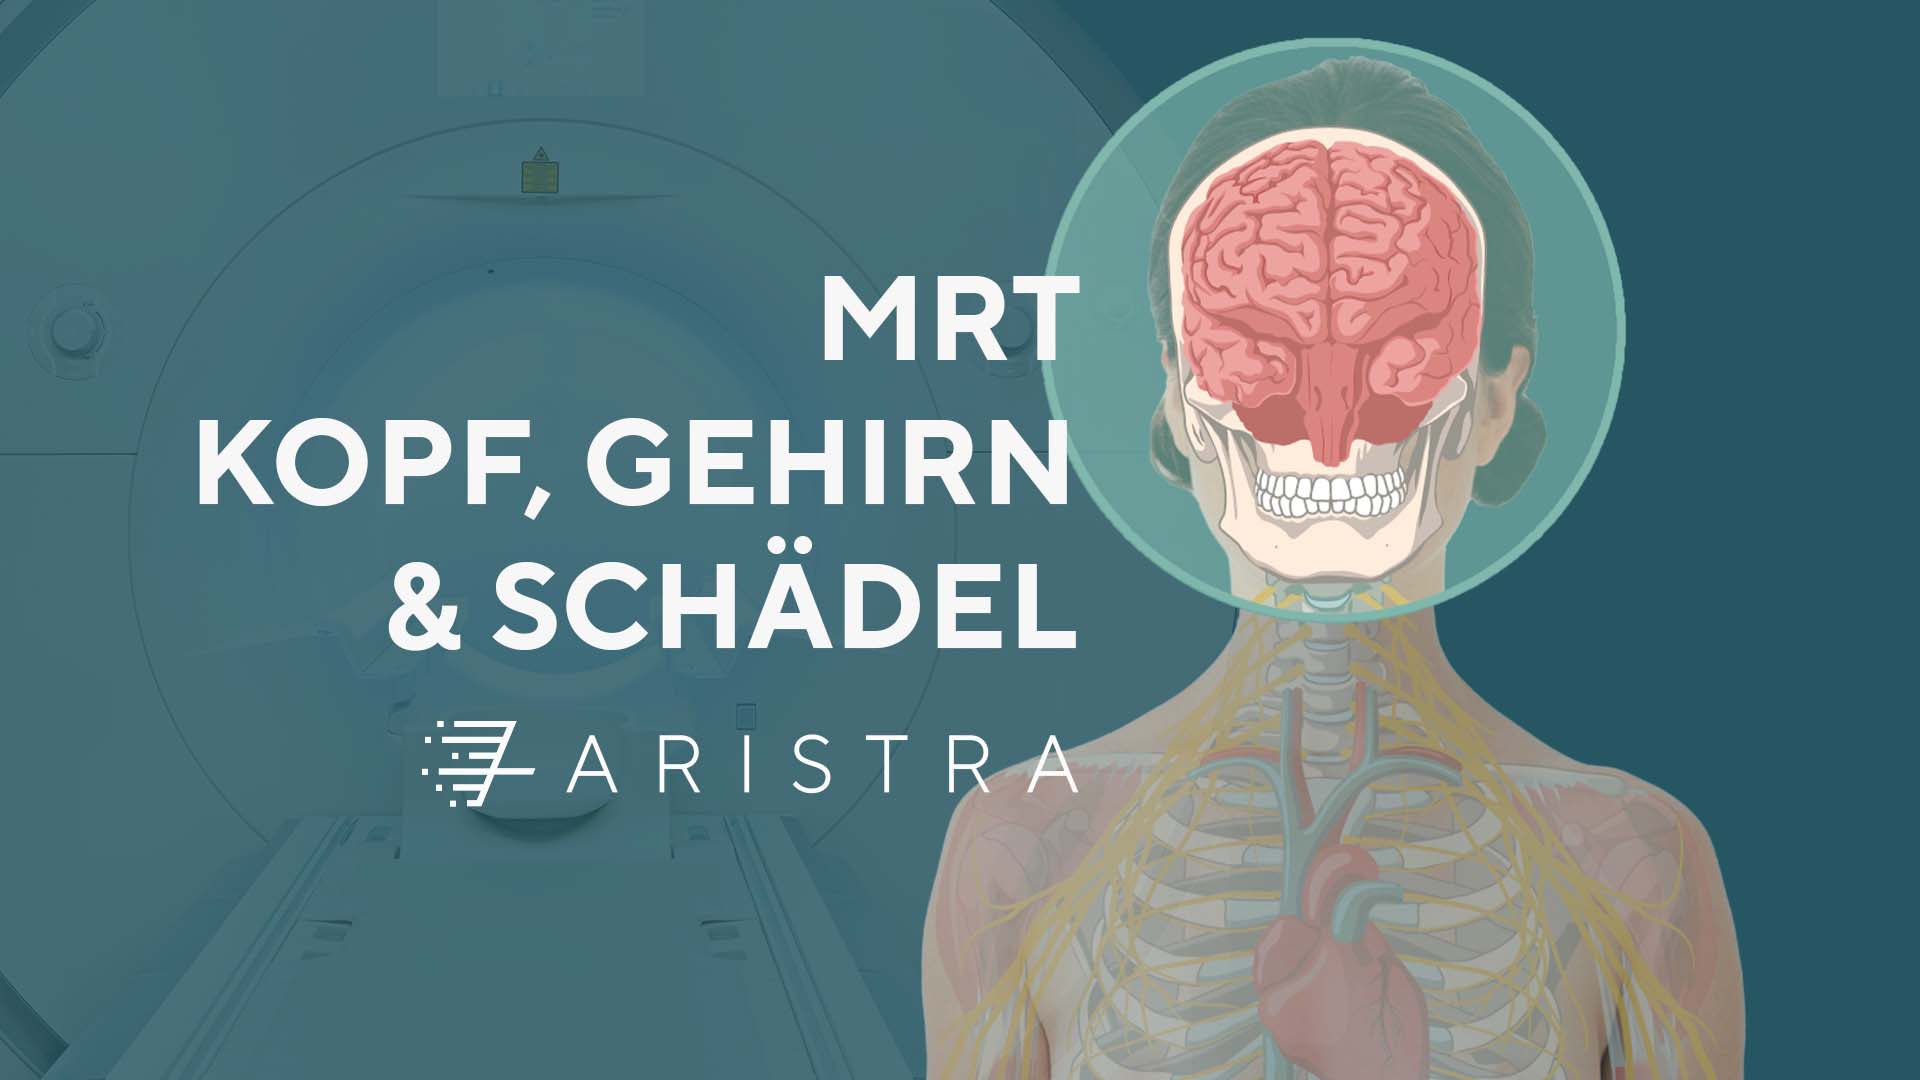 MRT Kopf, Gehirn & Schädel Abbildung